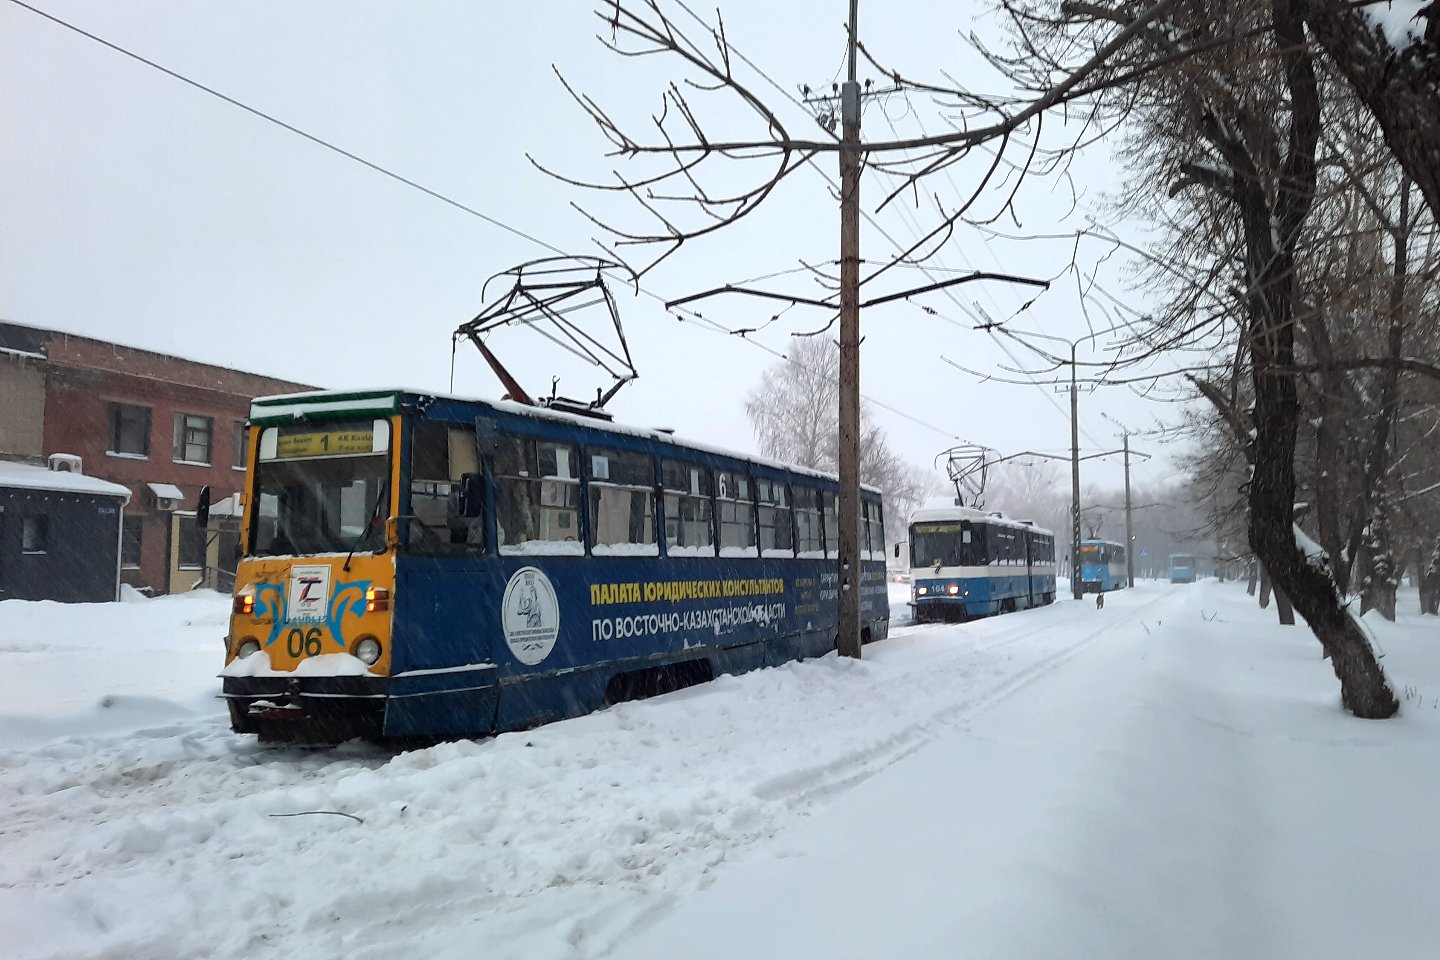 Усть-Каменогорск и ВКО / Трамвайное движение остановилось в Усть-Каменогорске сегодня утром